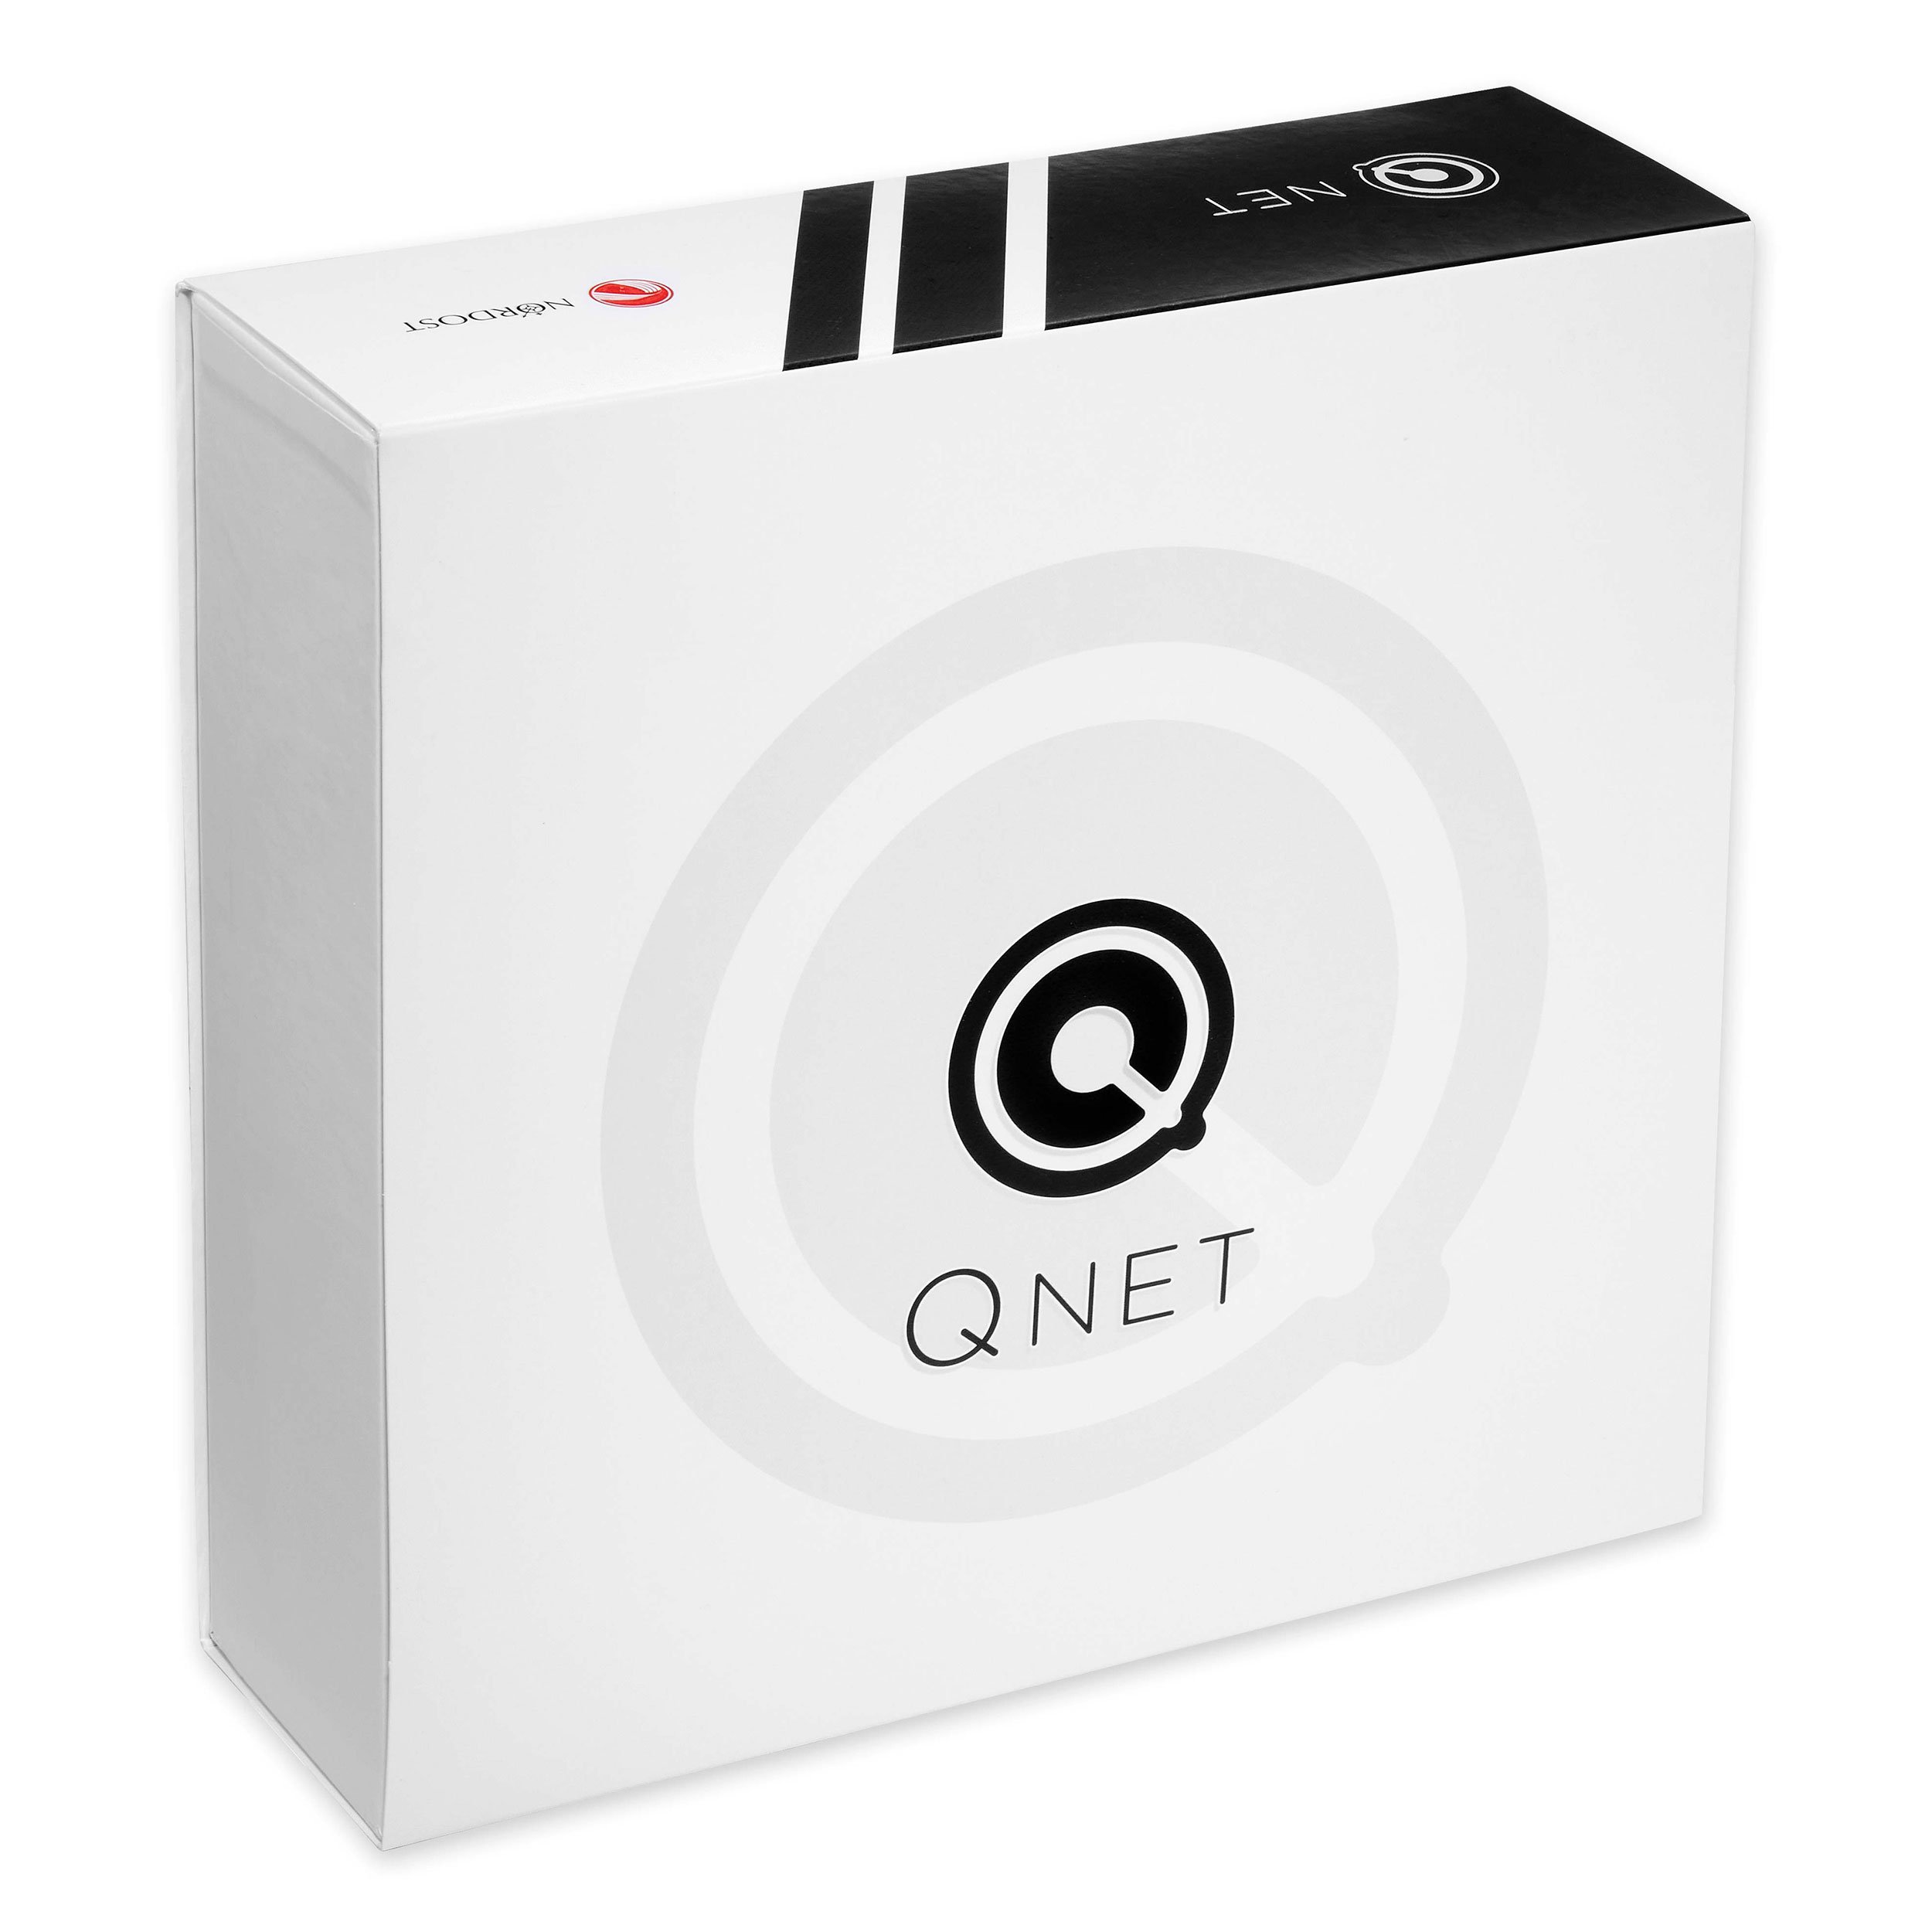 QNET_packaging.jpeg